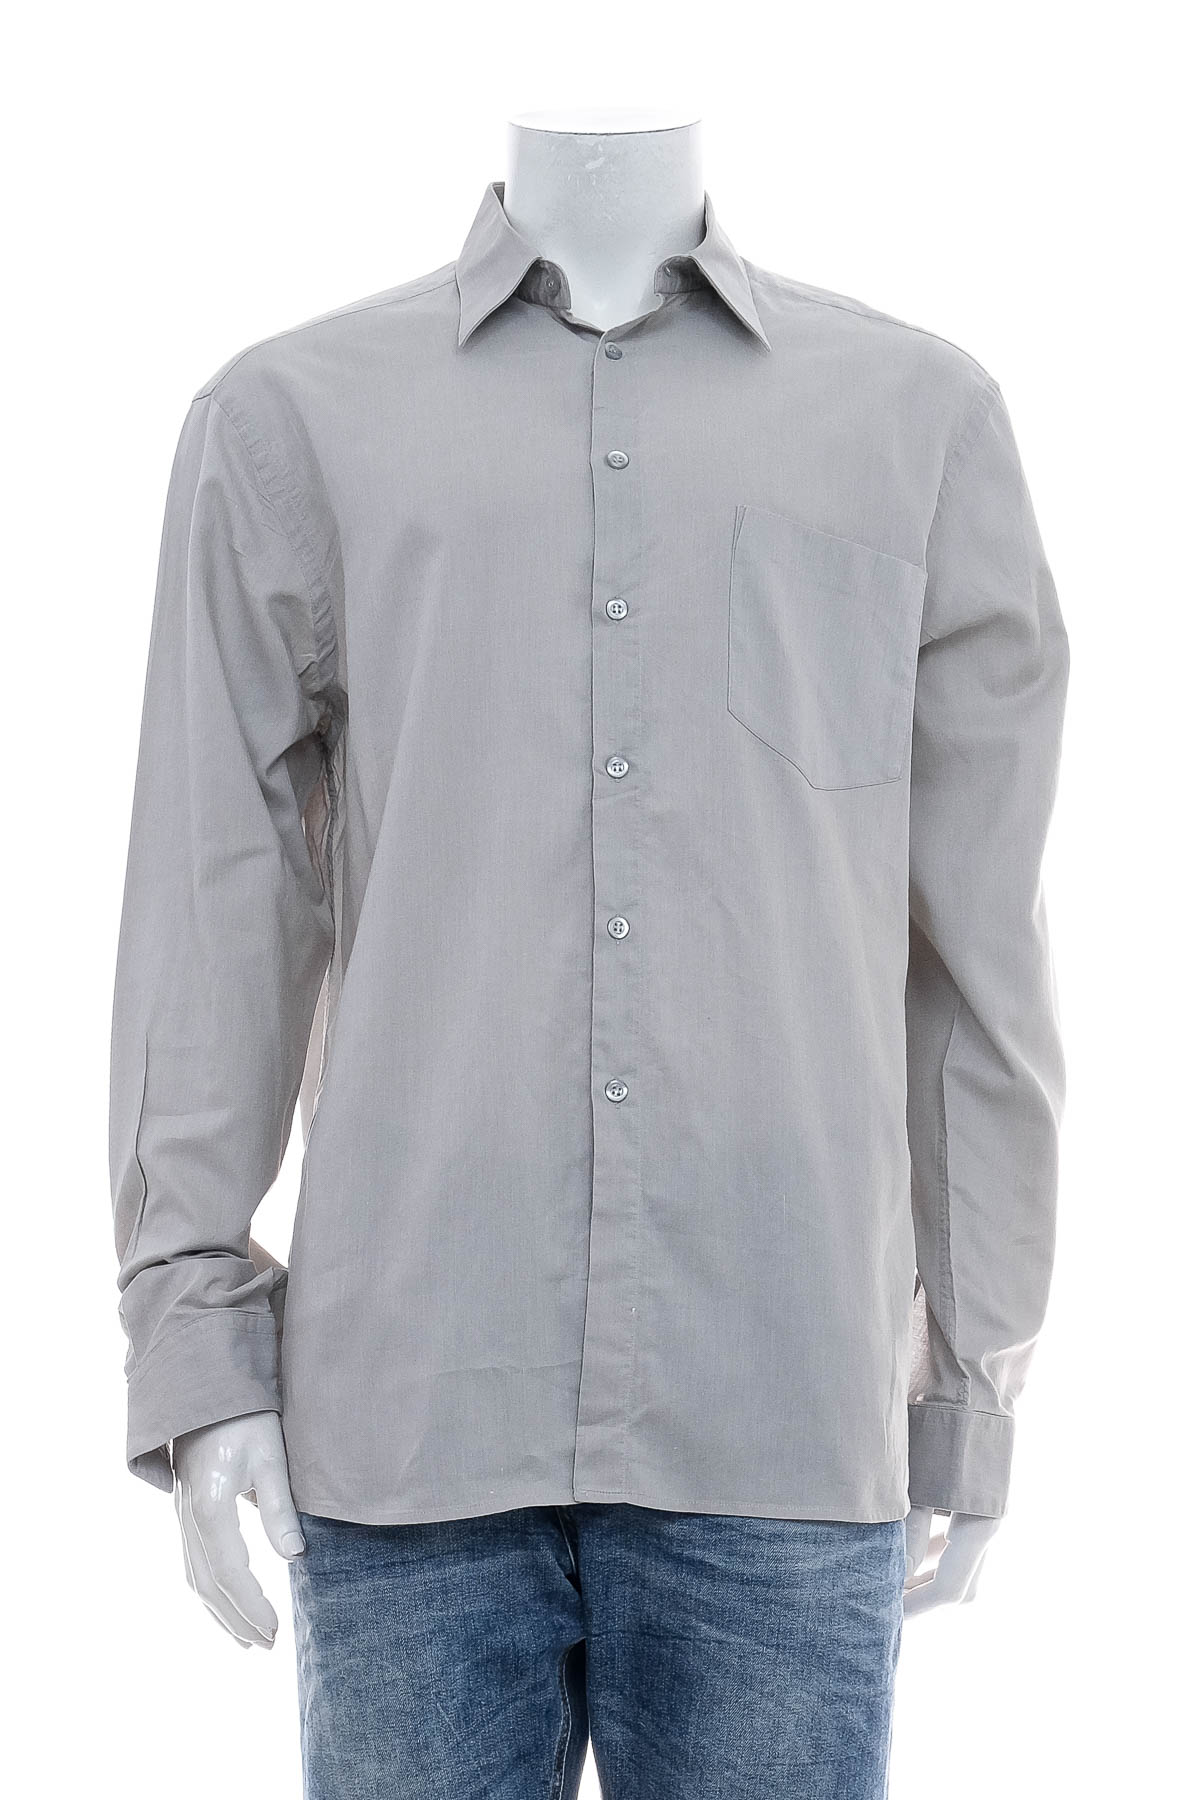 Ανδρικό πουκάμισο - HUGO BOSS - 0